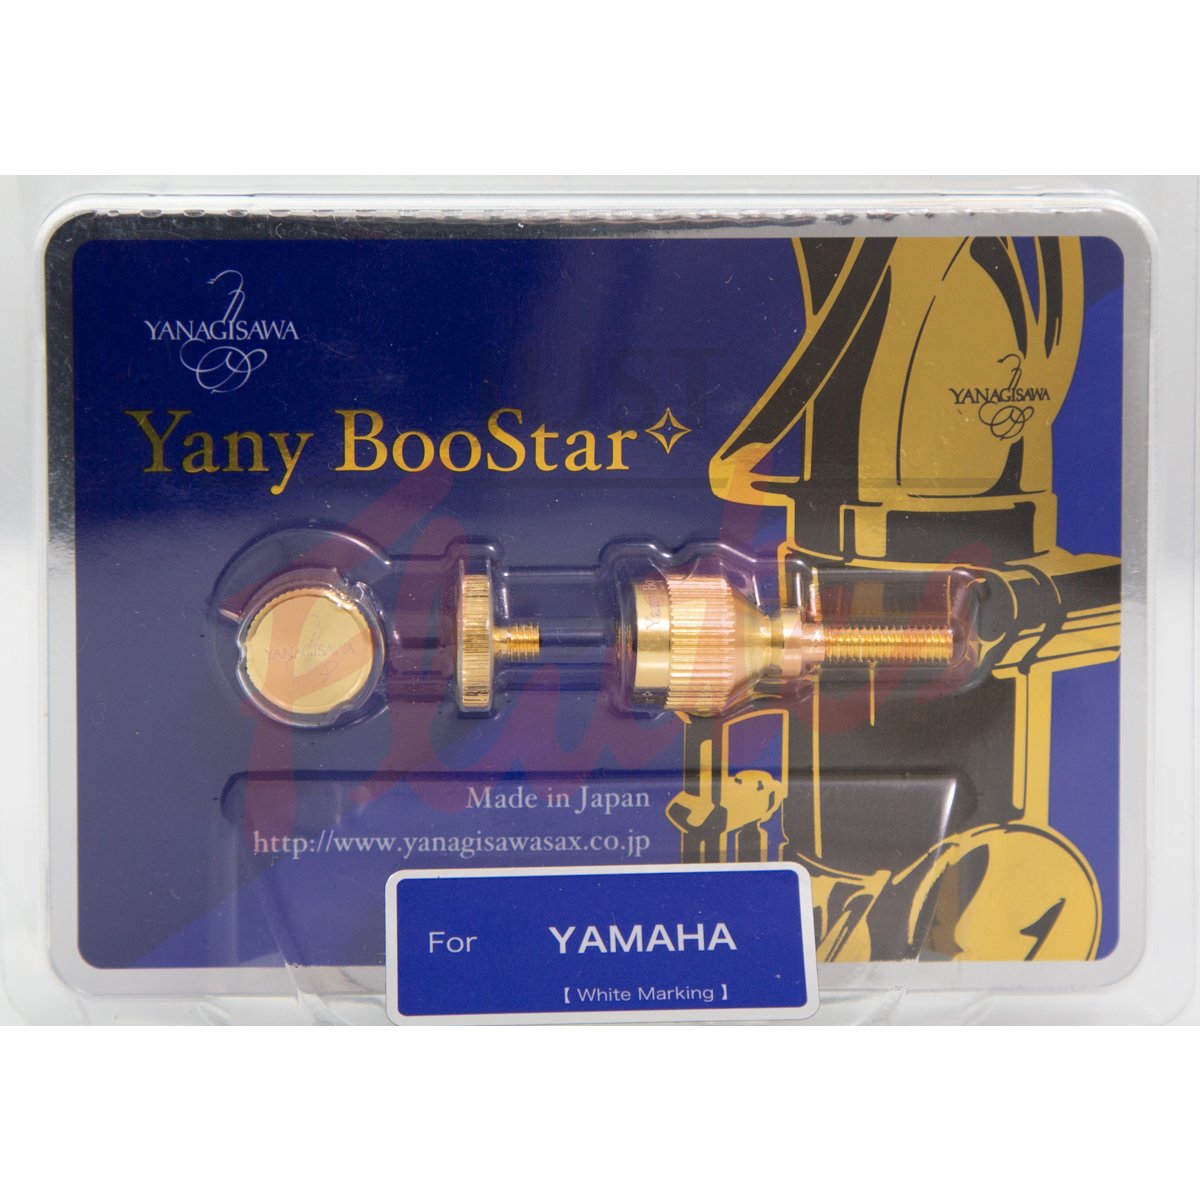 Yanagisawa "Yany" BooStar YBST4 Neck Screw Gold-Plated - Yamaha